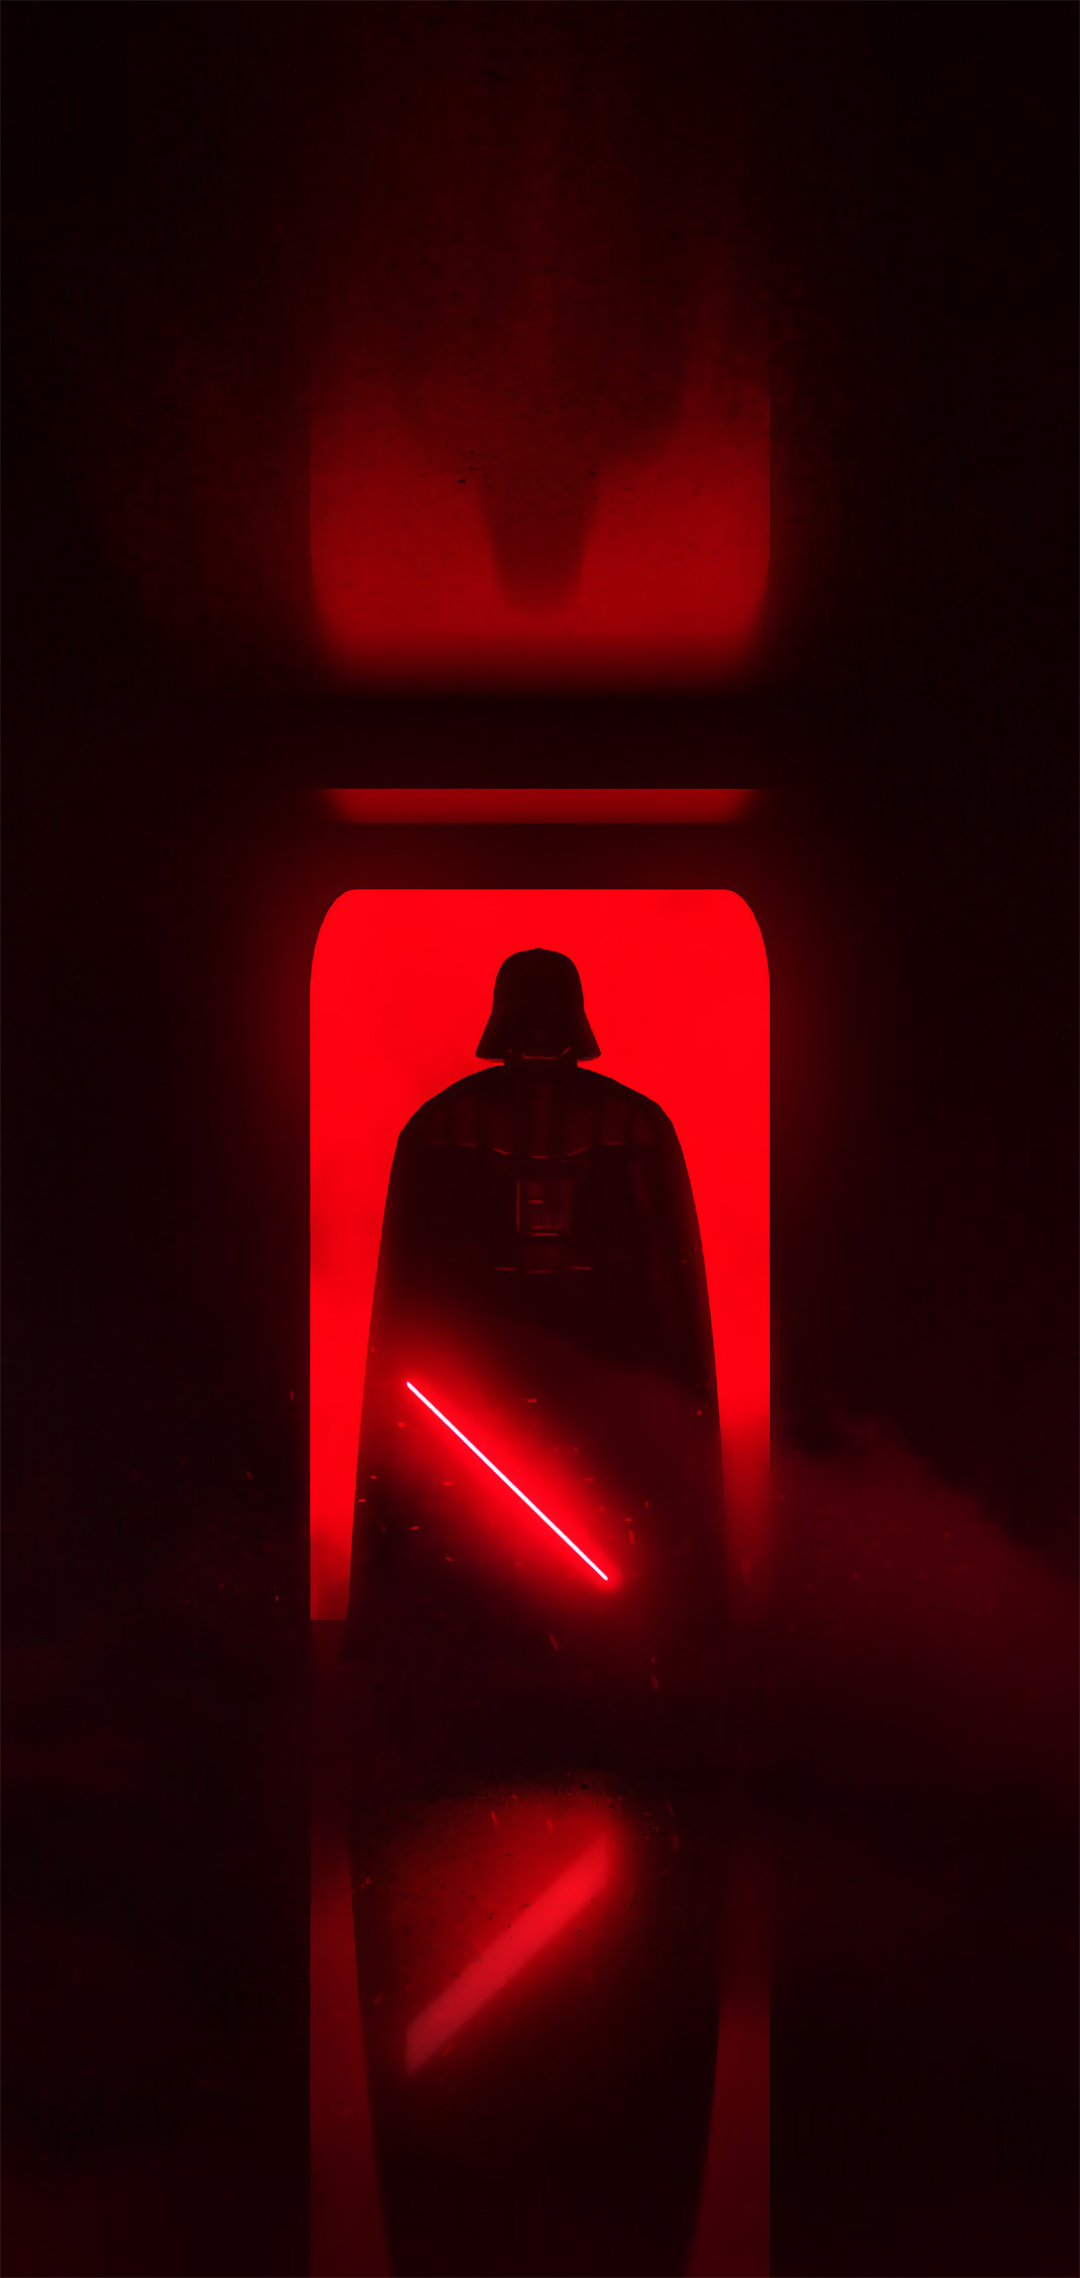 Hãy cùng tôi khám phá Darth Vader và những phân đoạn lịch sử đáng kinh ngạc khi xem hình nền này! Với màu đen tối và sức mạnh khác thường, Darth Vader sẽ hướng dẫn bạn vào thế giới của Star Wars, nơi bạn sẽ tìm thấy những cuộc phiêu lưu đầy màu sắc và thử thách.